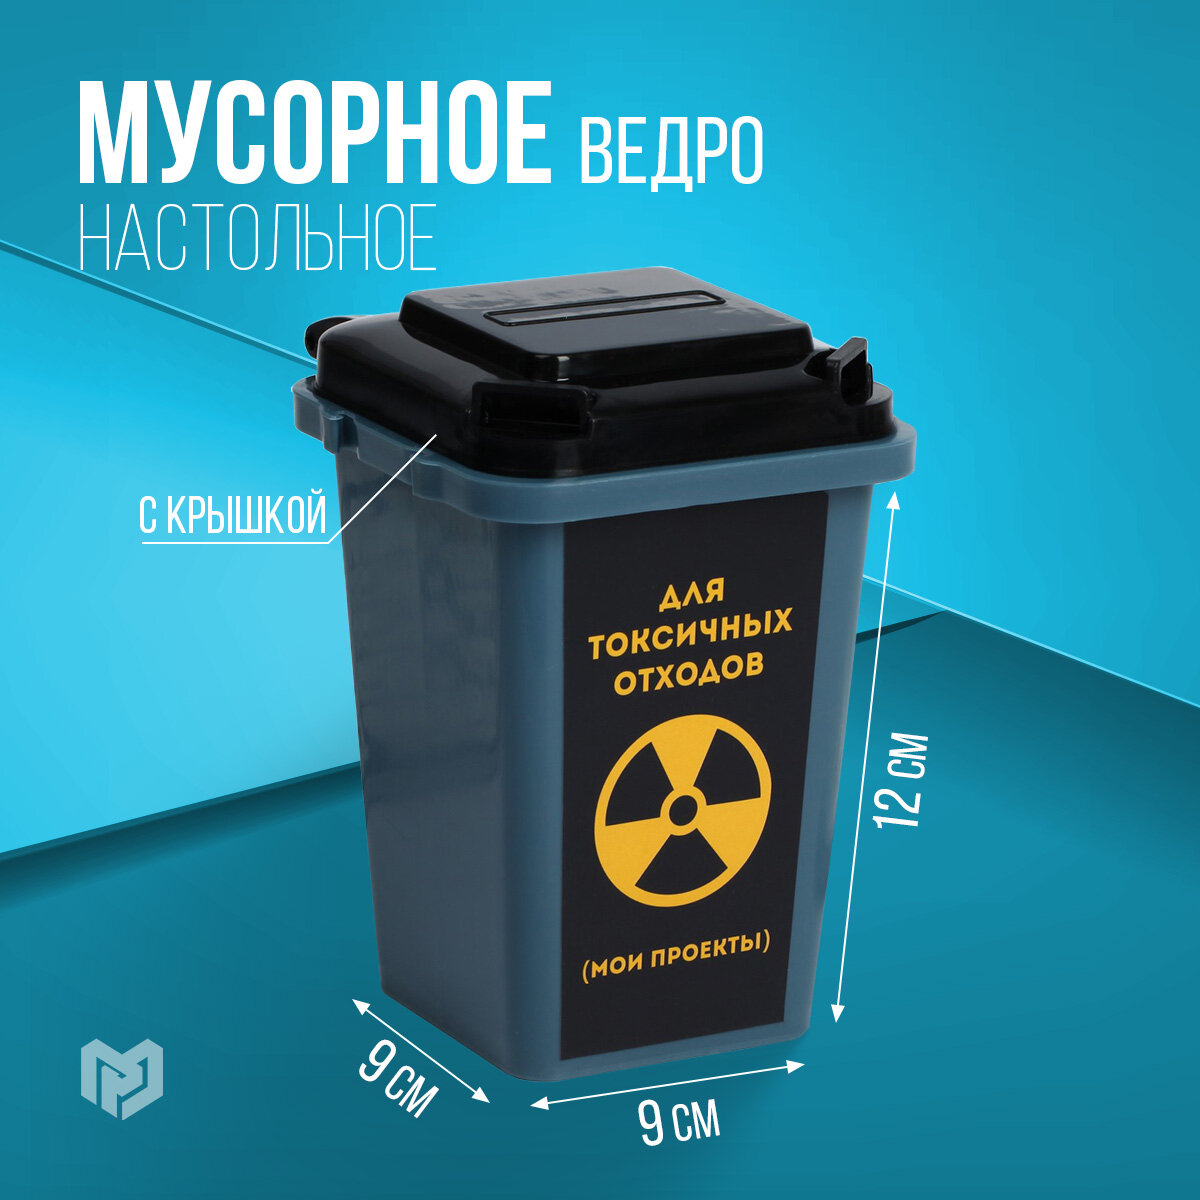 Настольное мусорное ведро Для токсичных отходов, 12 × 9 см